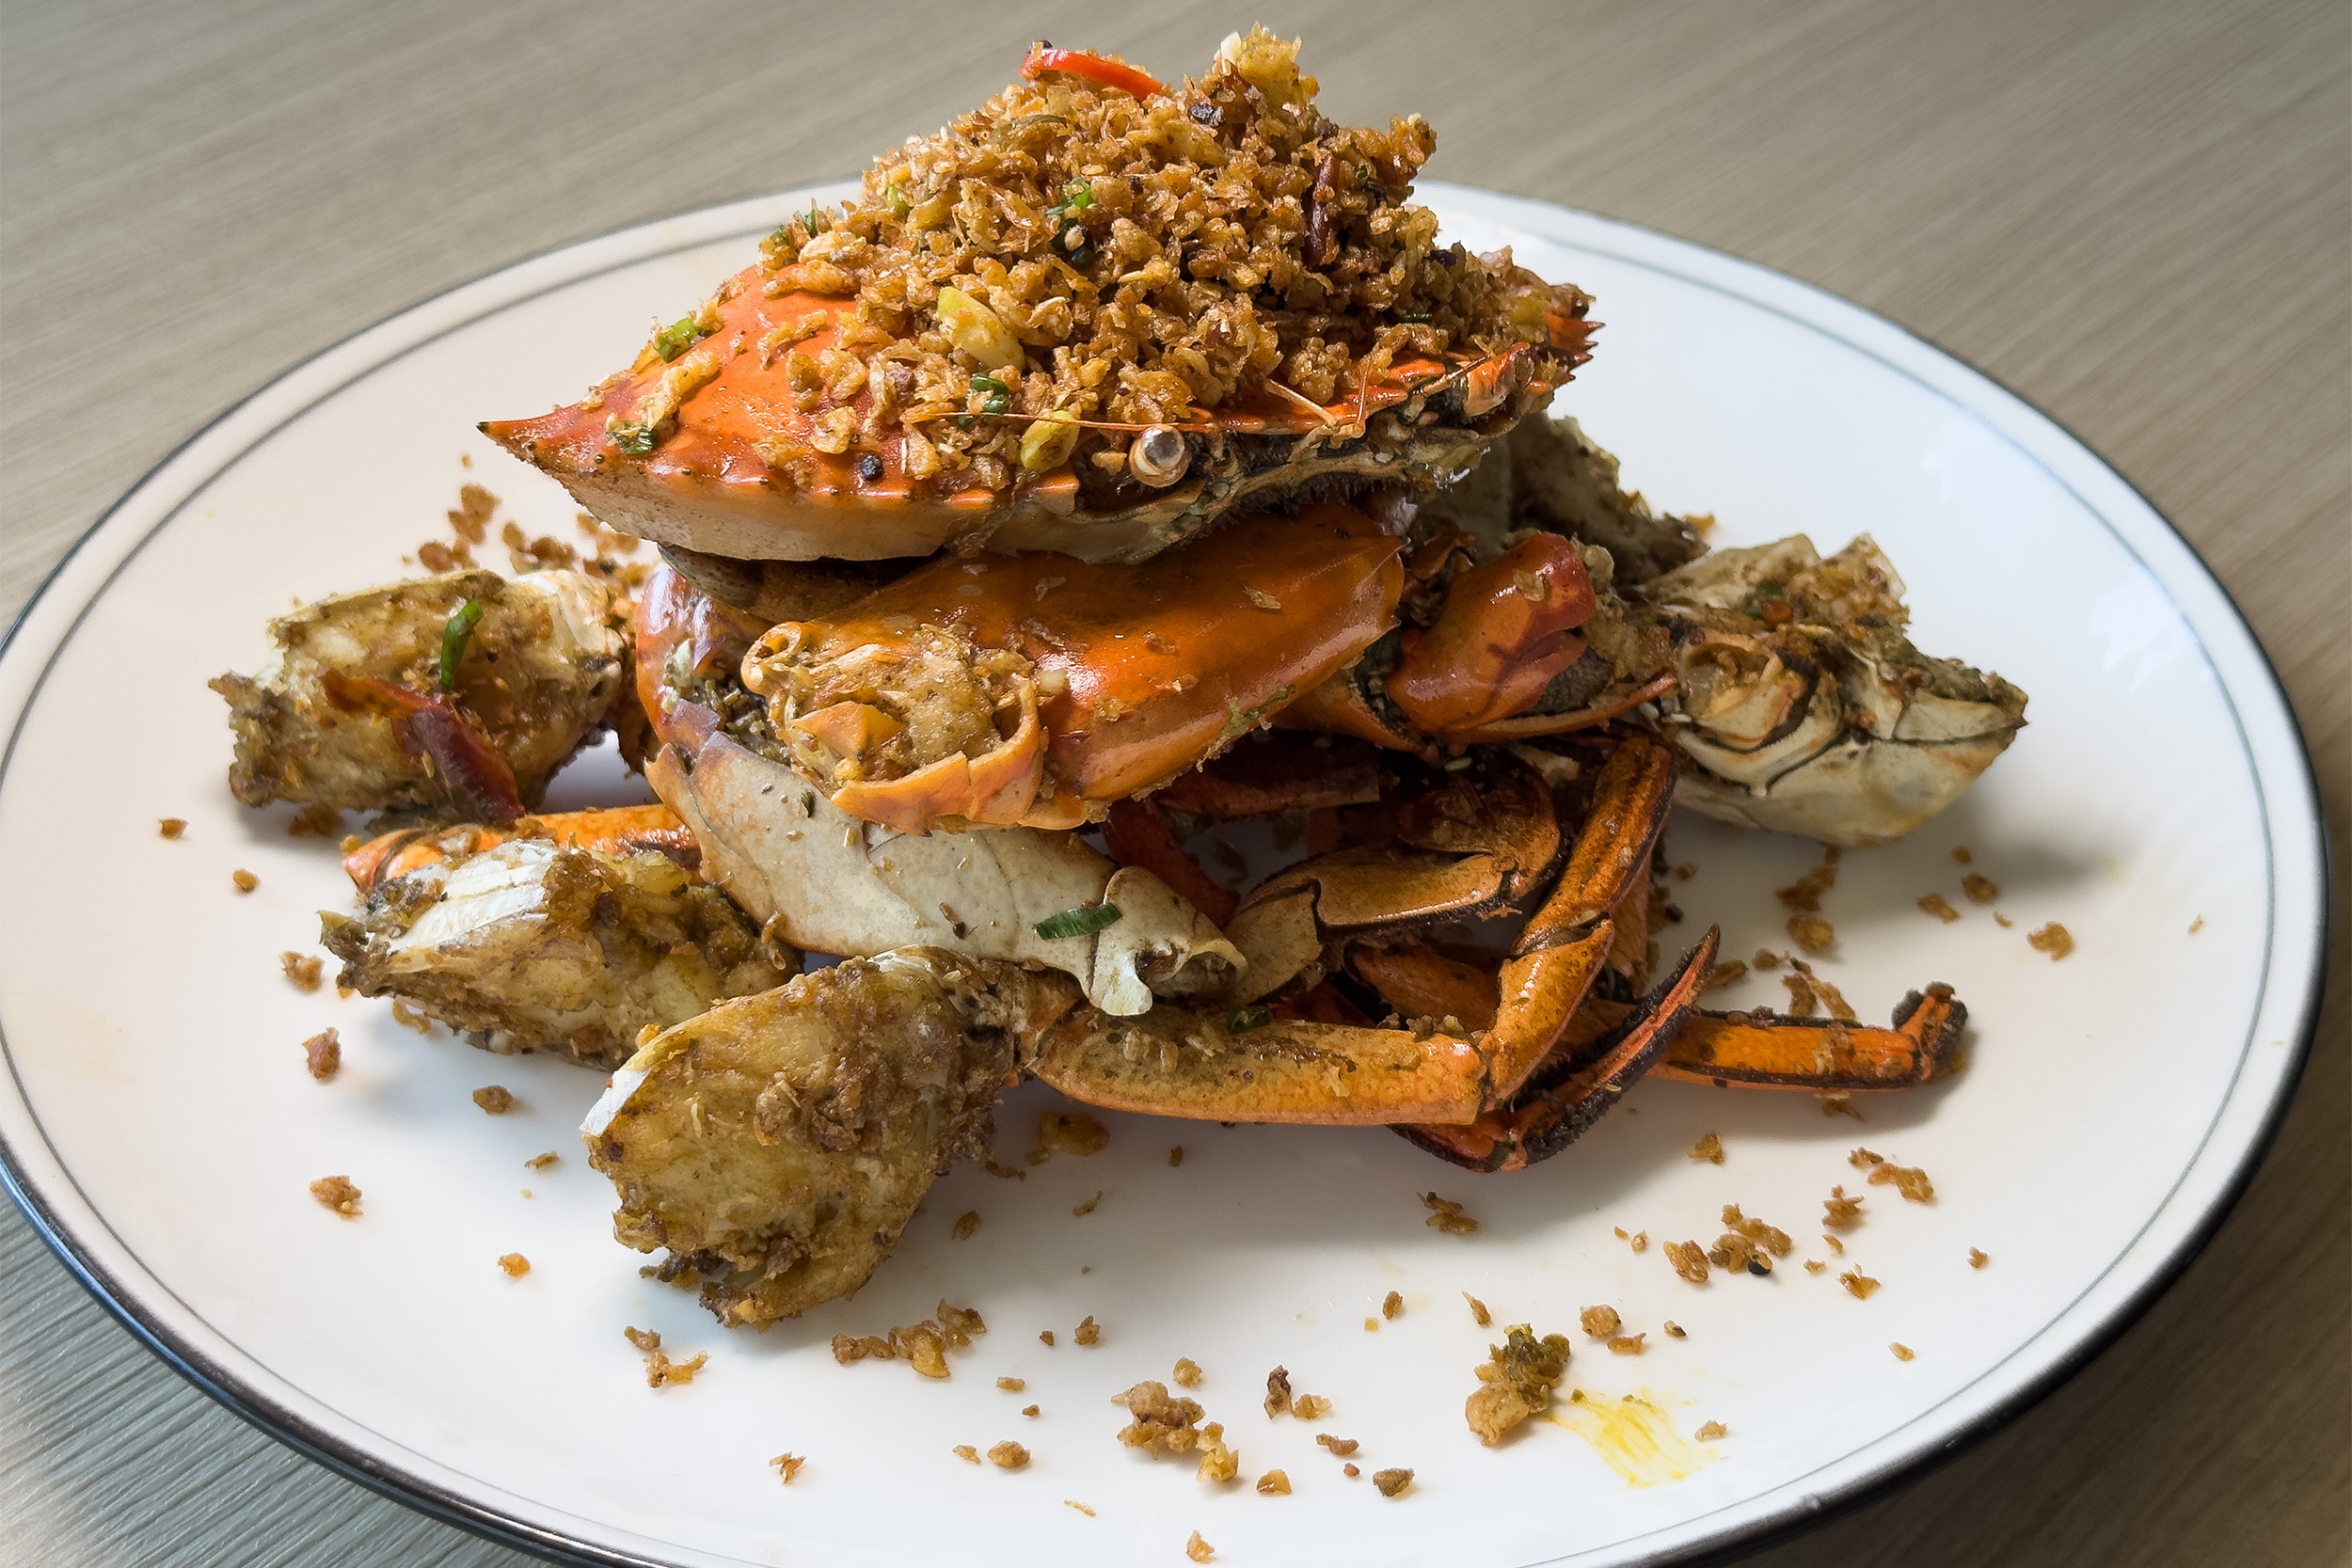 客人可選擇將螃蟹食材改做成避風塘炒蟹等港炒料理。（童心怡攝）